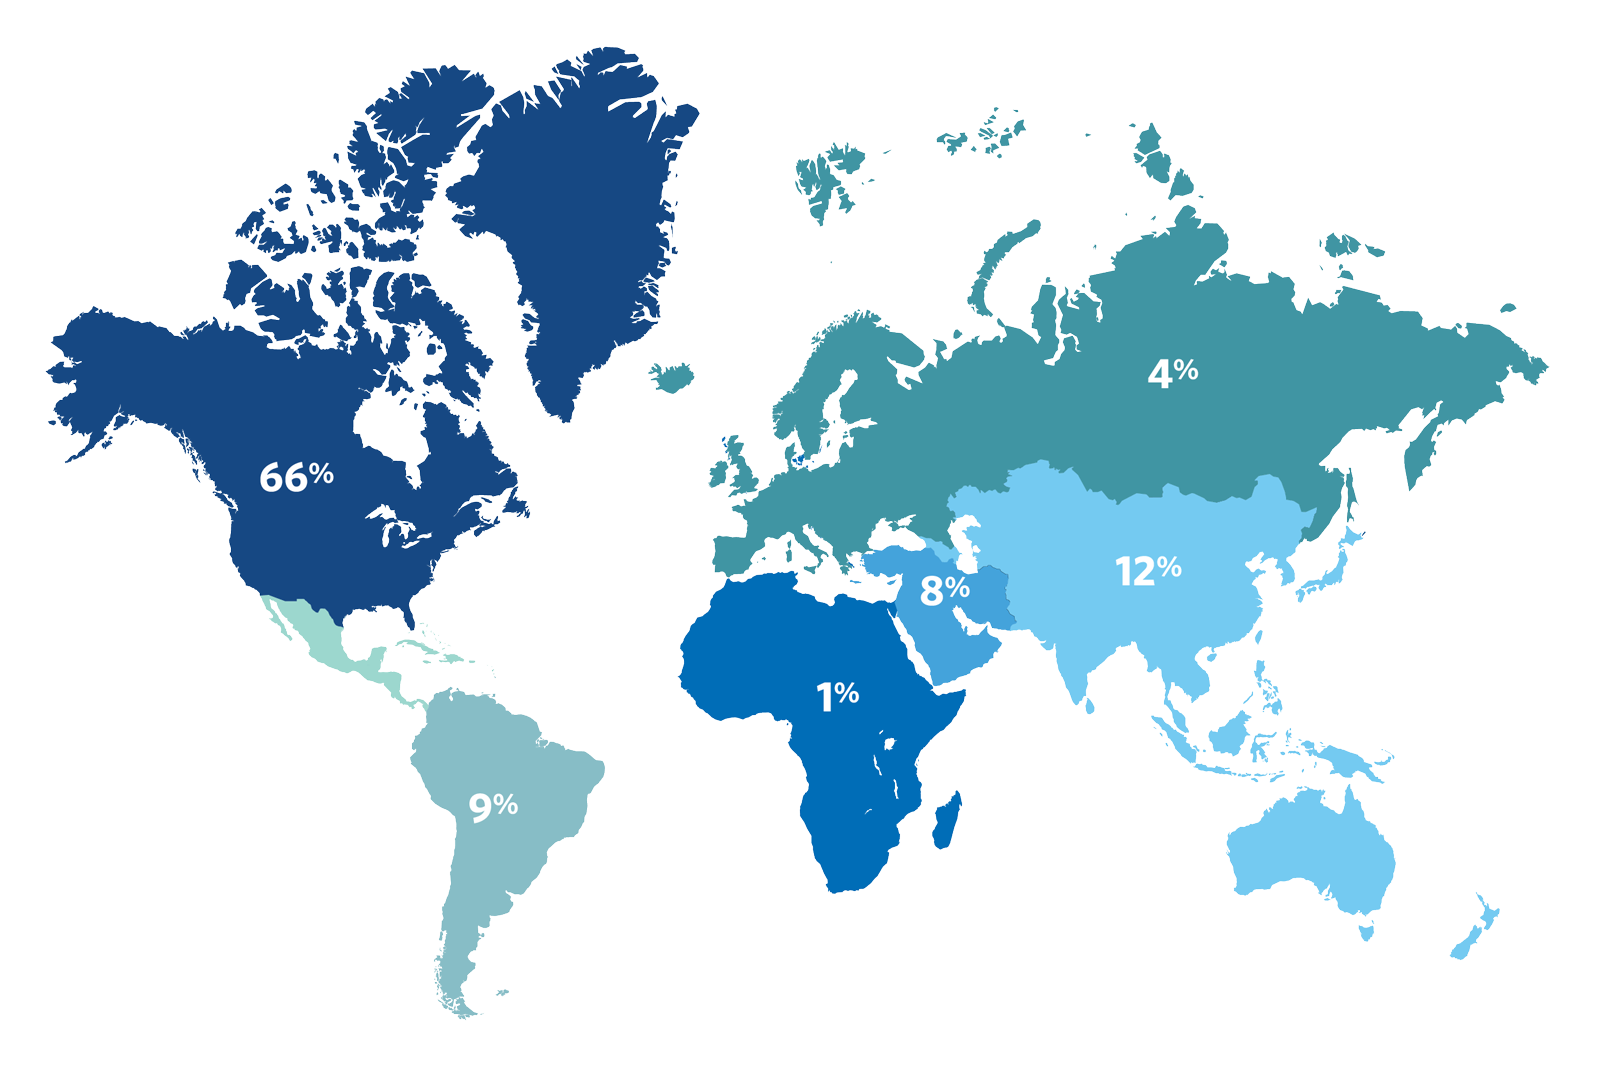 Venture Capital participants by region